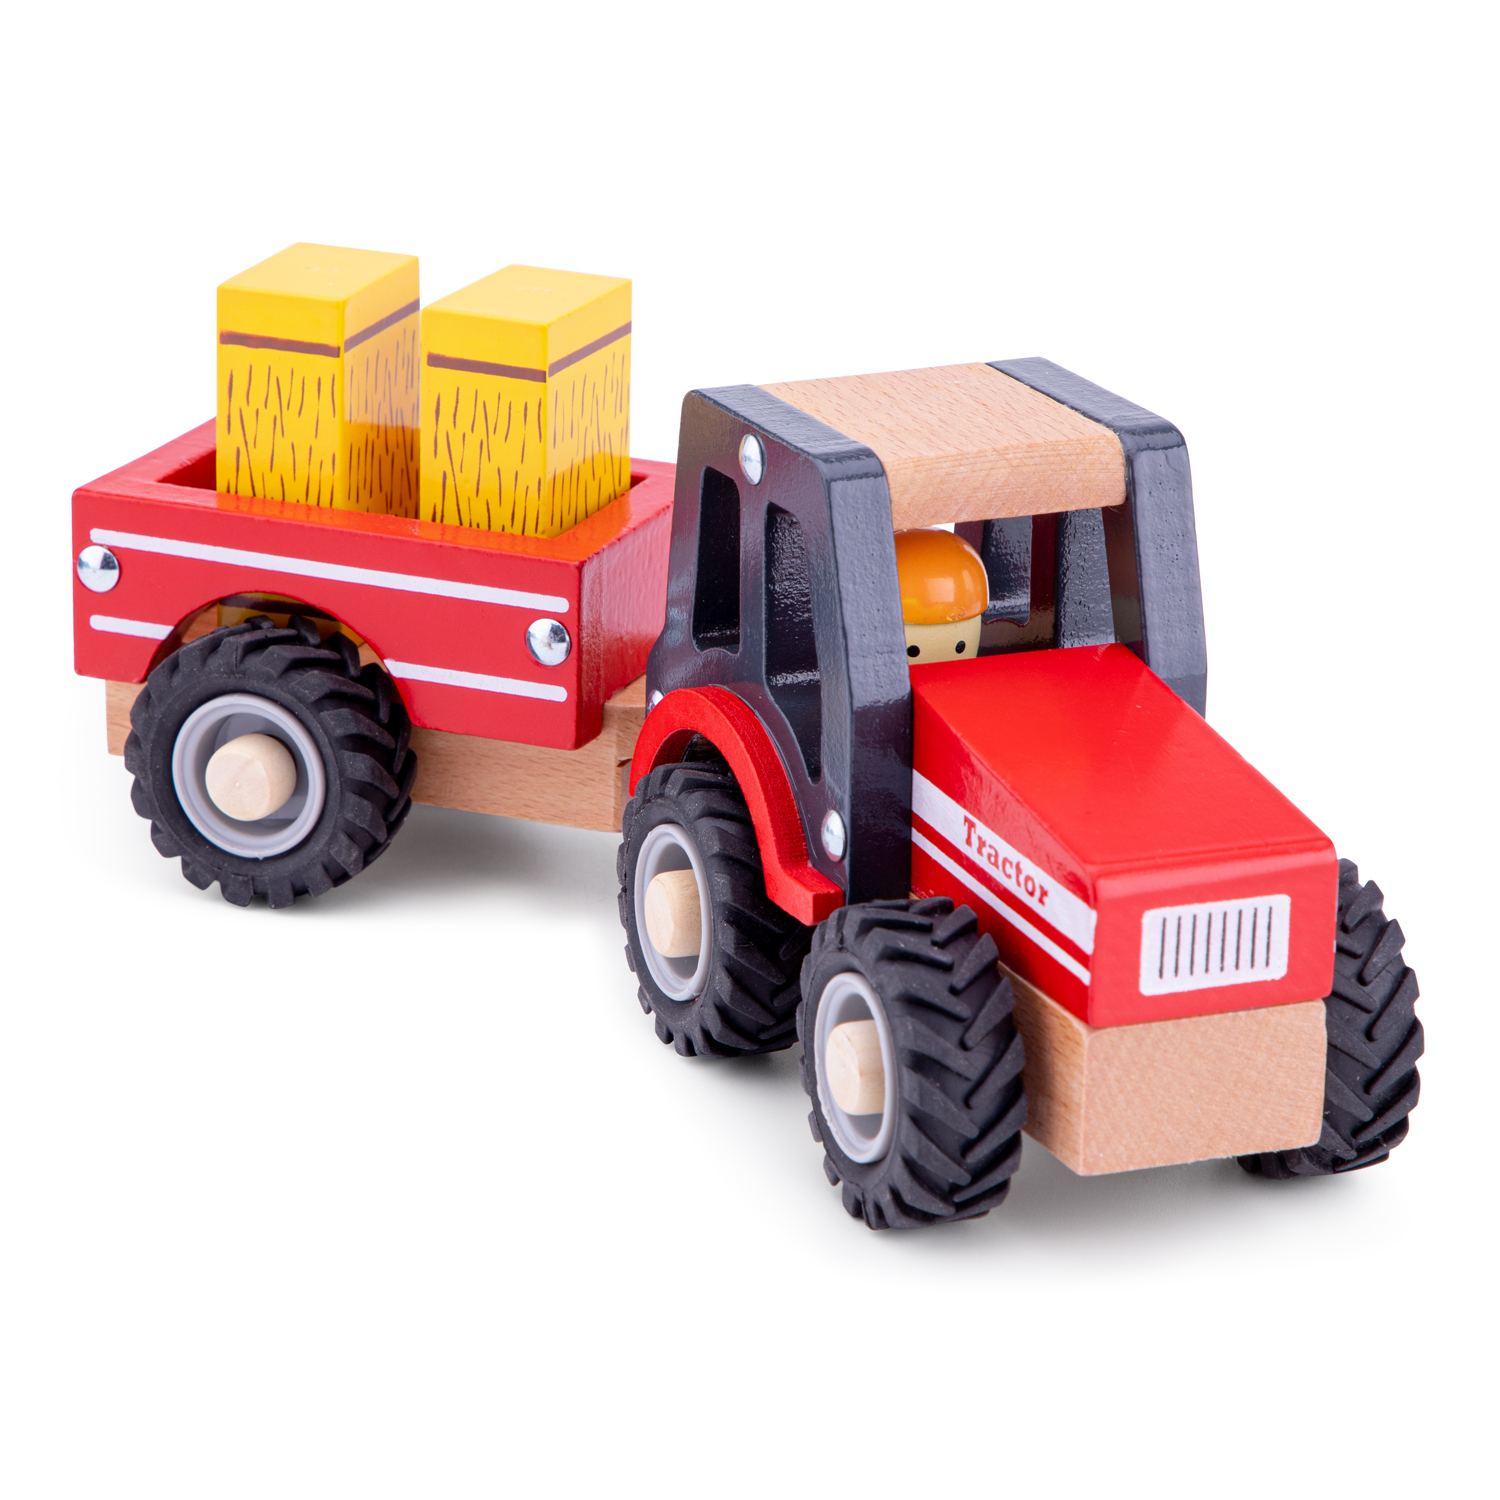 Traktor aus Holz mit Anhänger und Heuballen Kinderspielzeug